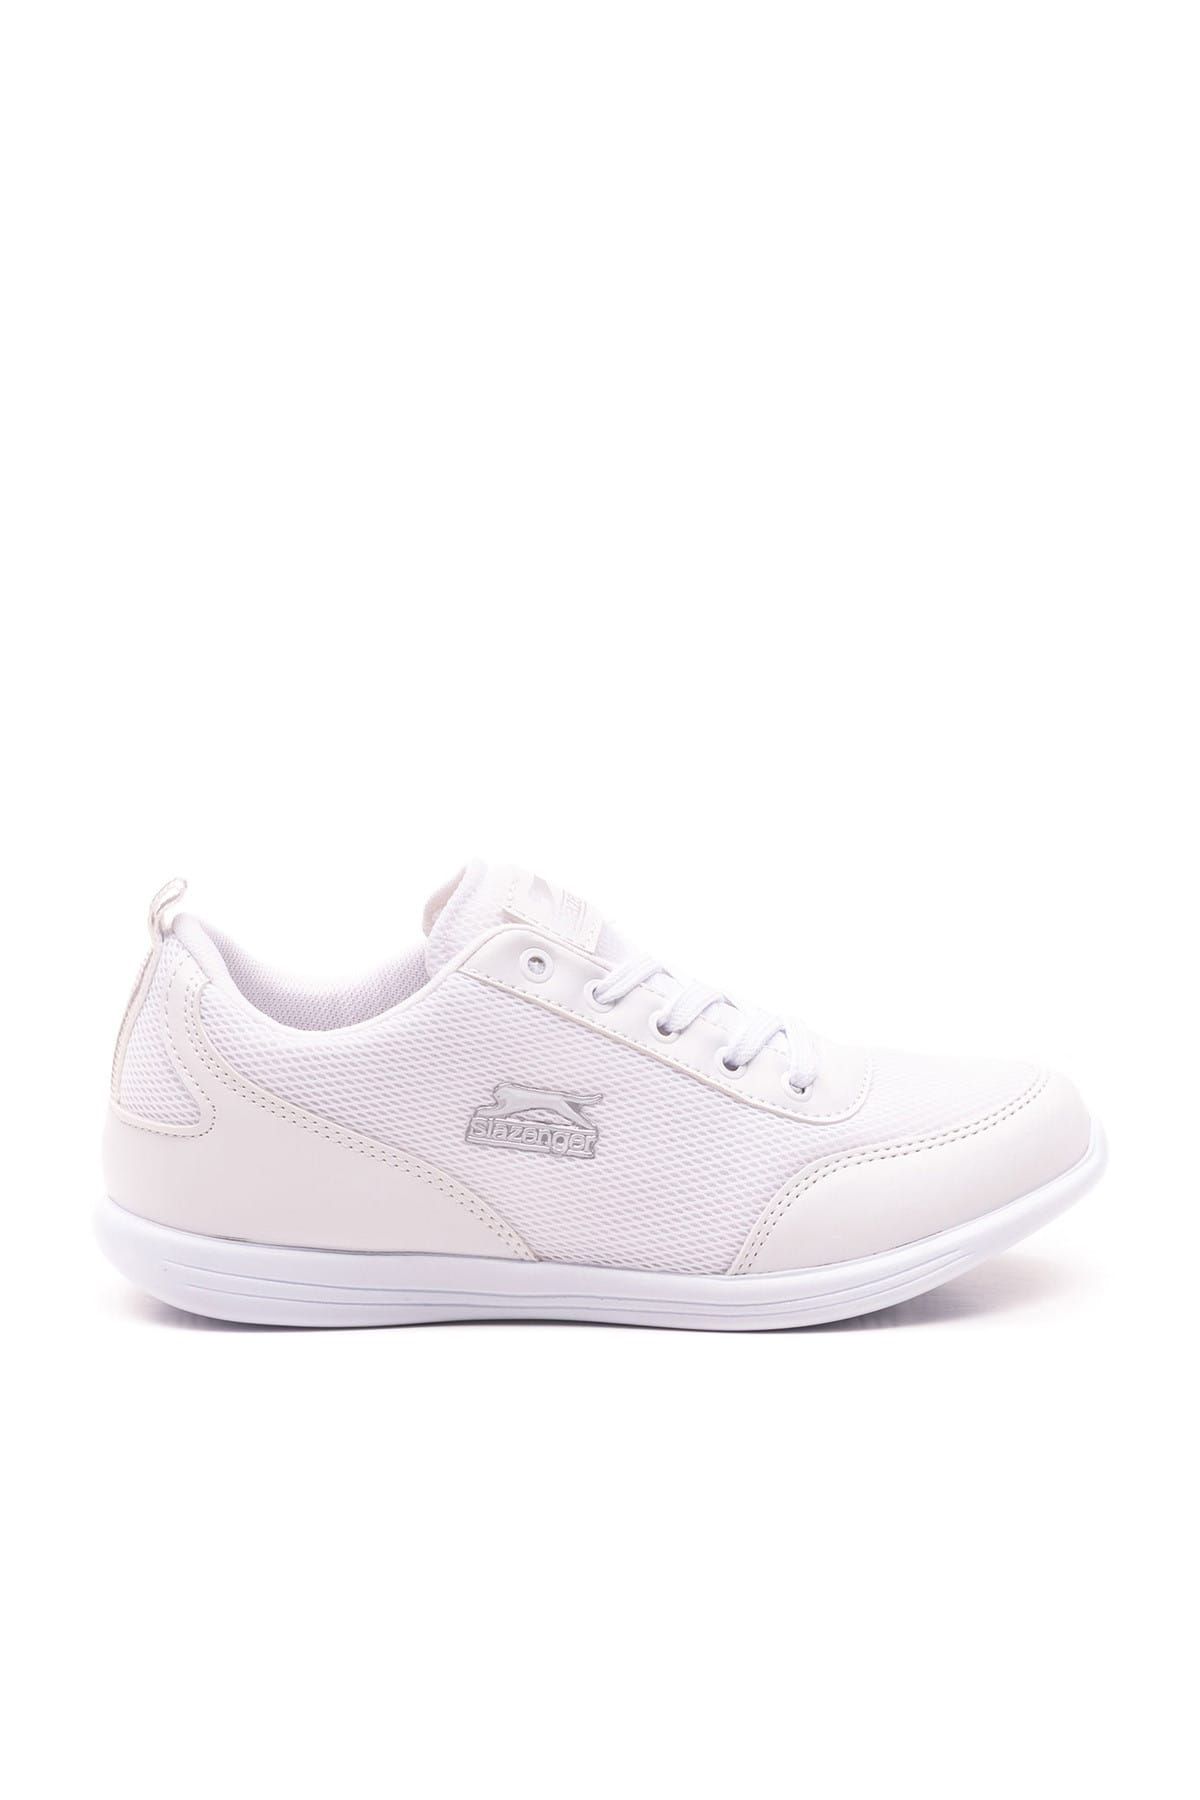 Slazenger Zen Sneaker Kadın Ayakkabı Beyaz